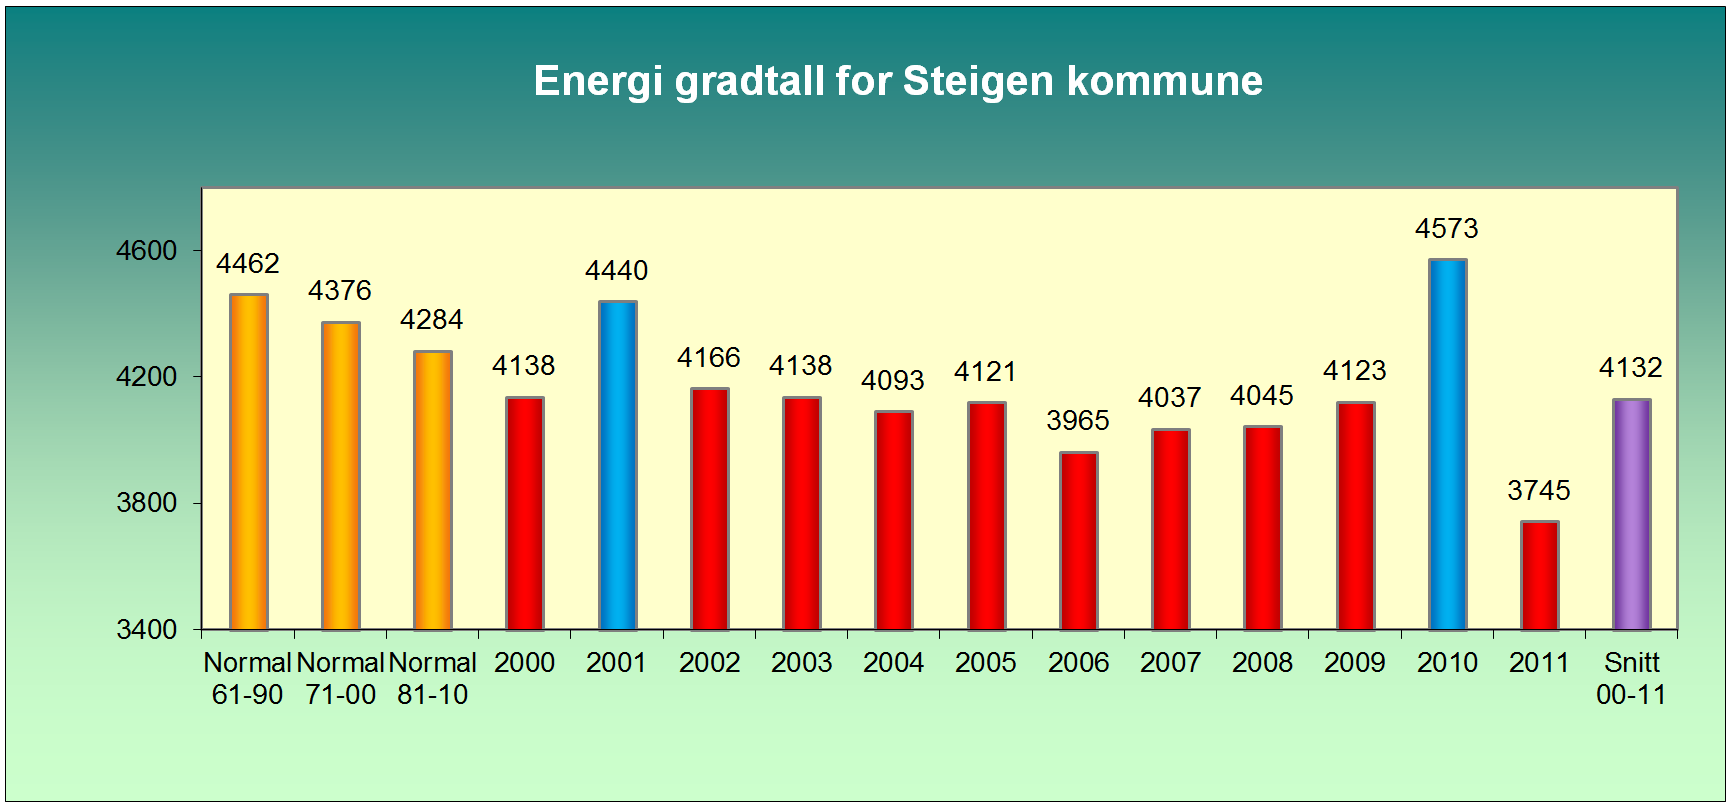 Figur 10 viser graddagstallene for Steigen kommune. Energibruken i denne utredningen er ikke graddagskorrigert, men tallene kan leses på bakgrunn av grafen.